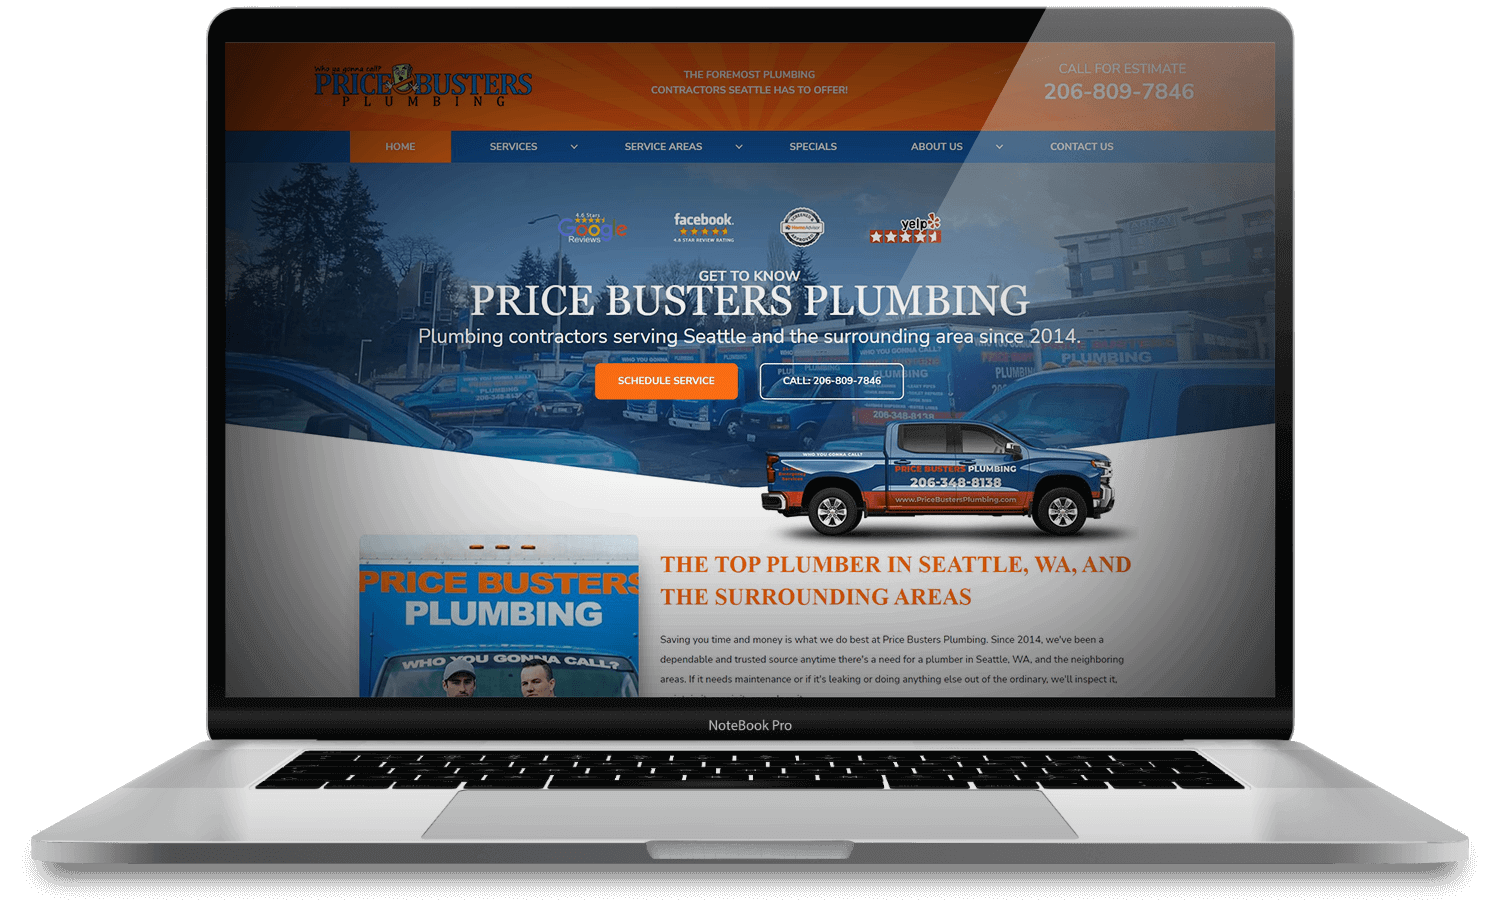 Price Busters Plumbing Website Design